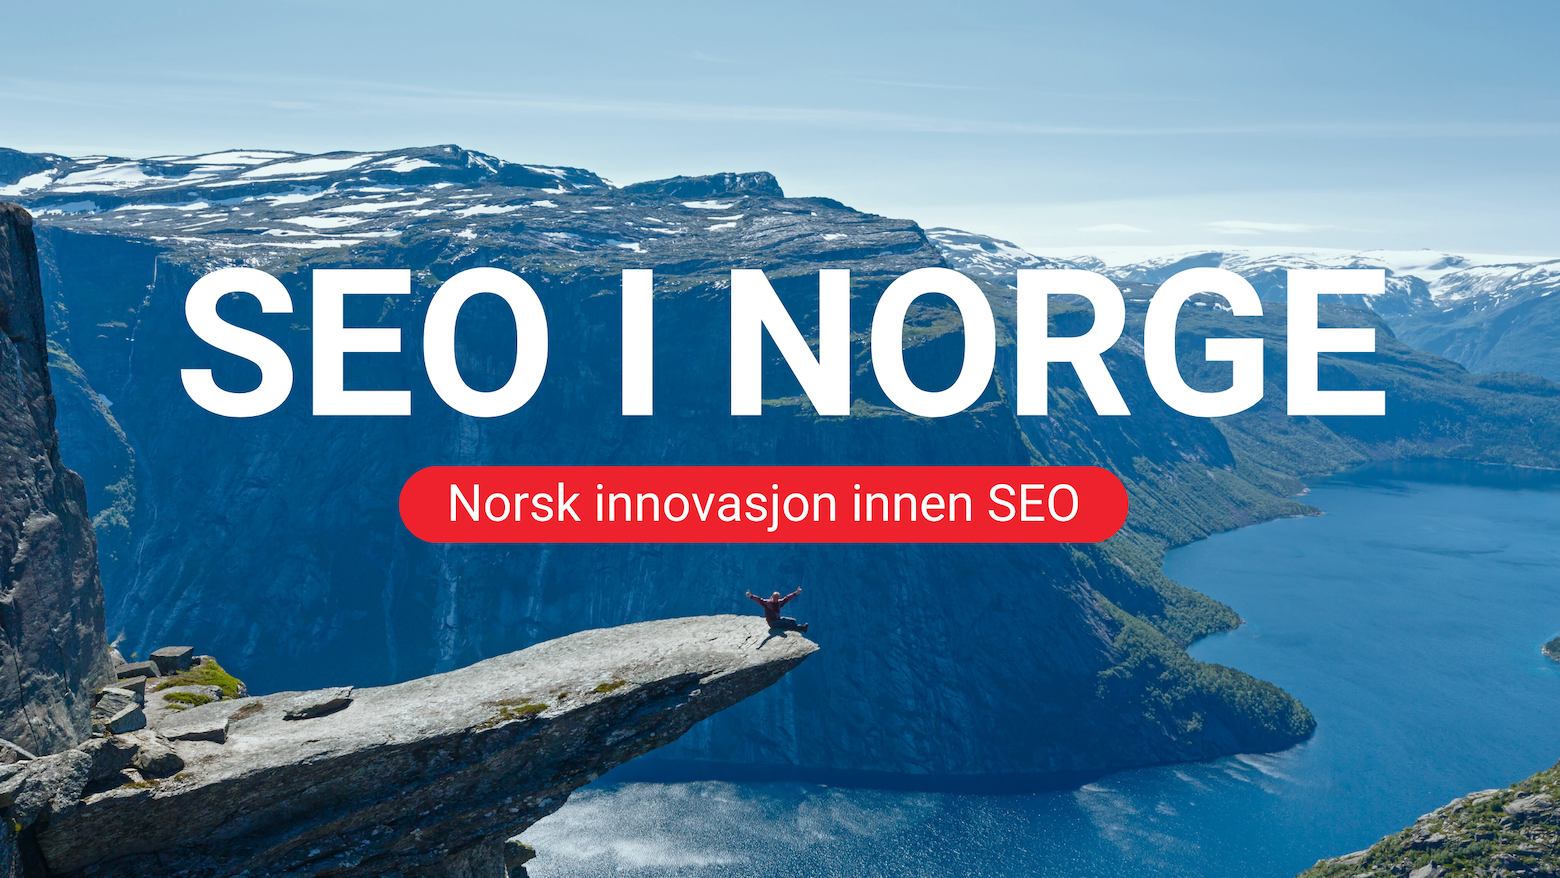 Norsk innovasjon innen SEO: Norge går foran